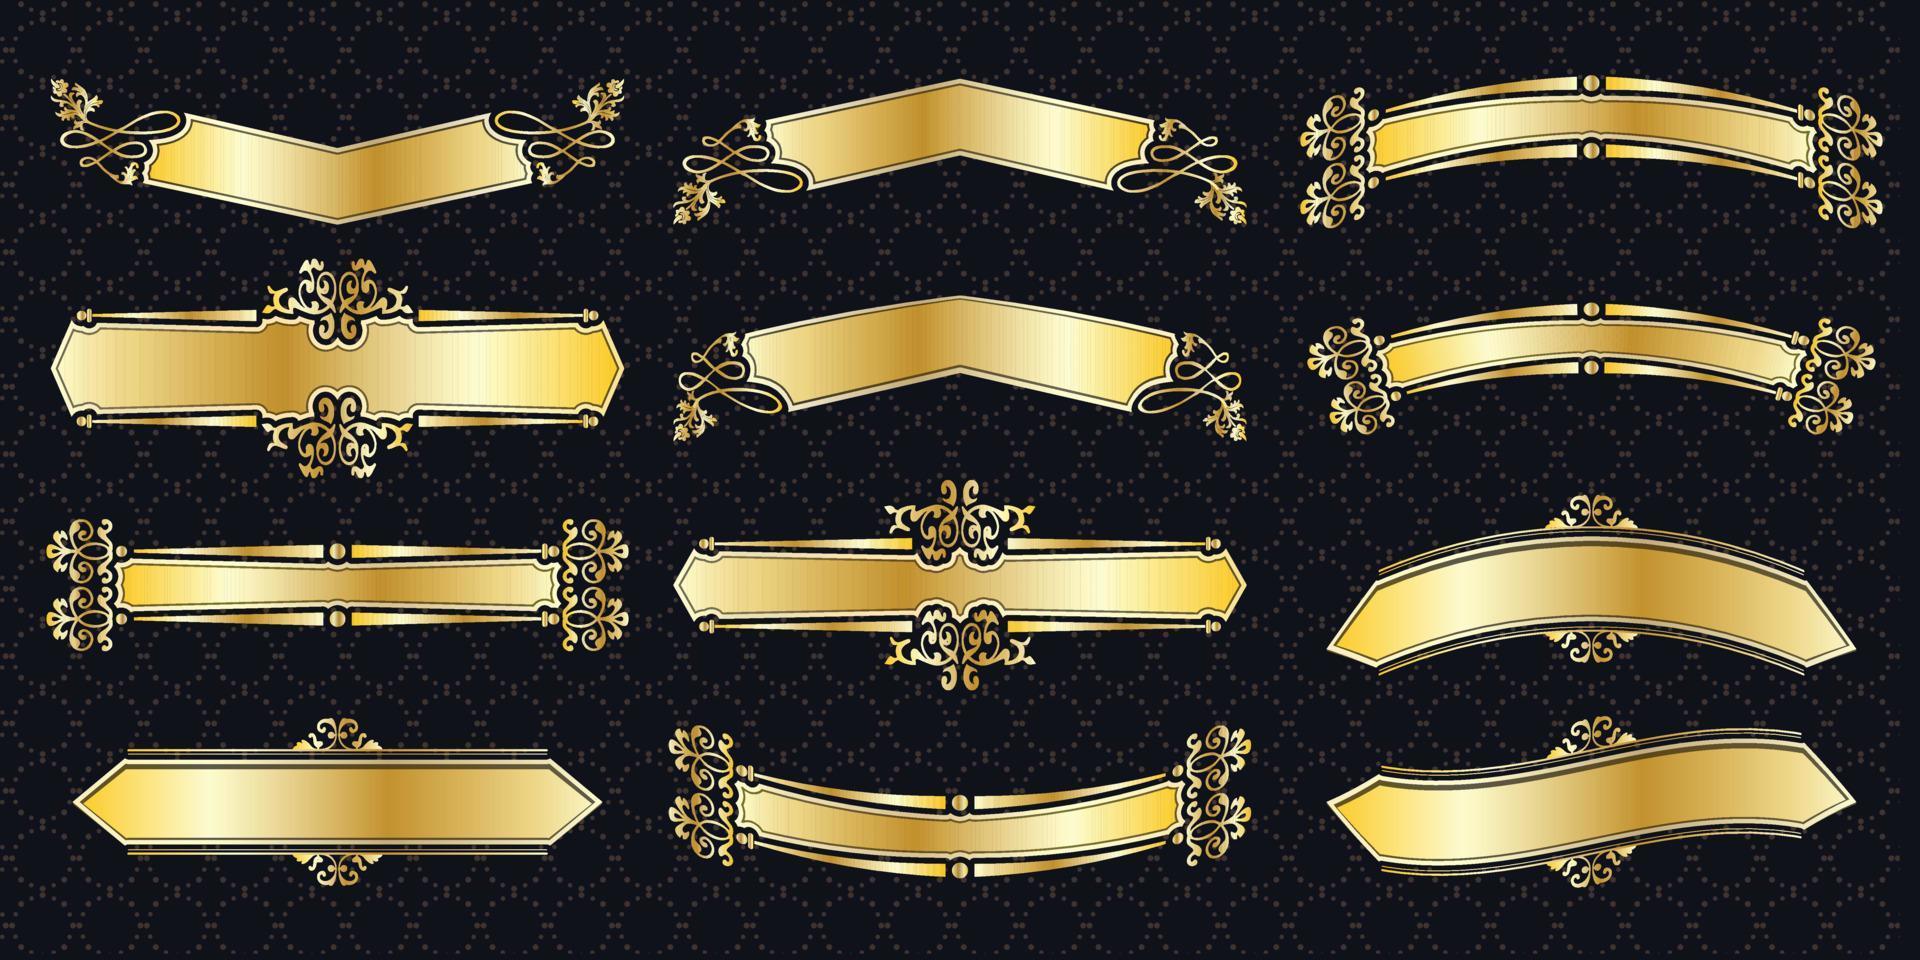 cornice set bordo ornato vintage dorato classico ornamentale elementi antichi banner grafico decorationelegant bundle di raccolta vettore